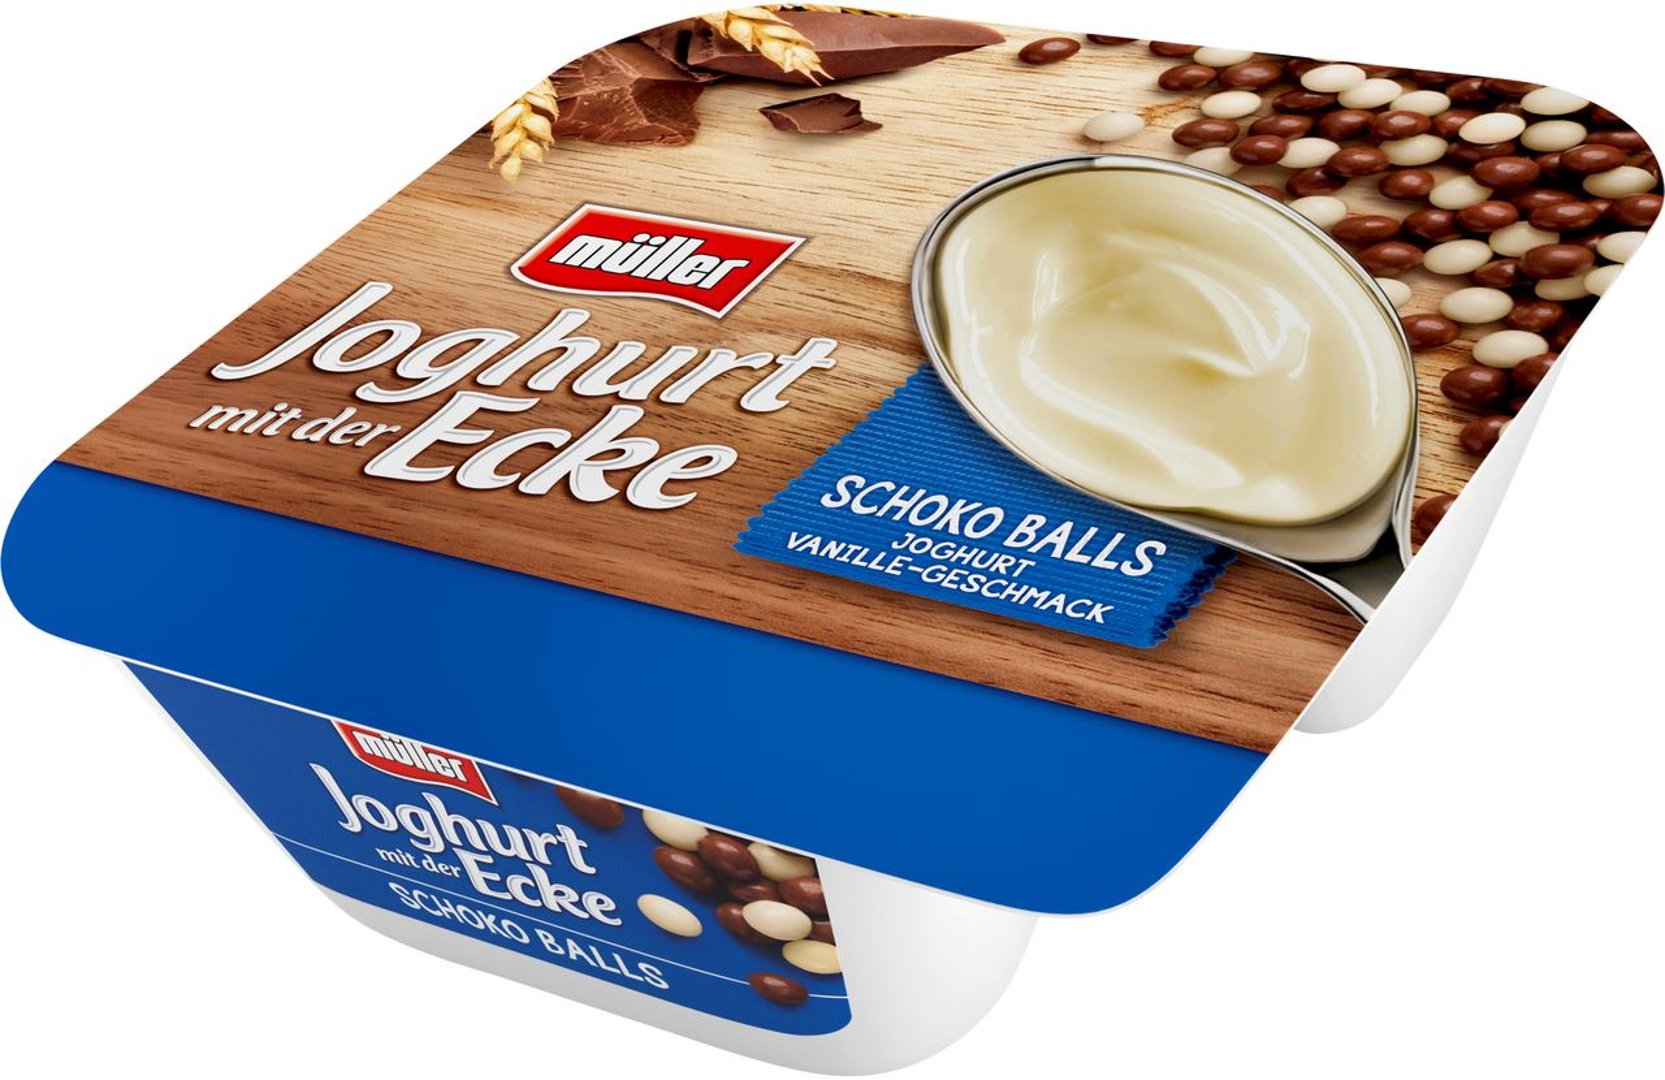 müller - Joghurt mit der Ecke Knusper Schokoballs mit Vanille-Geschmack 3,8 % Fett - 1 x 150 g Becher